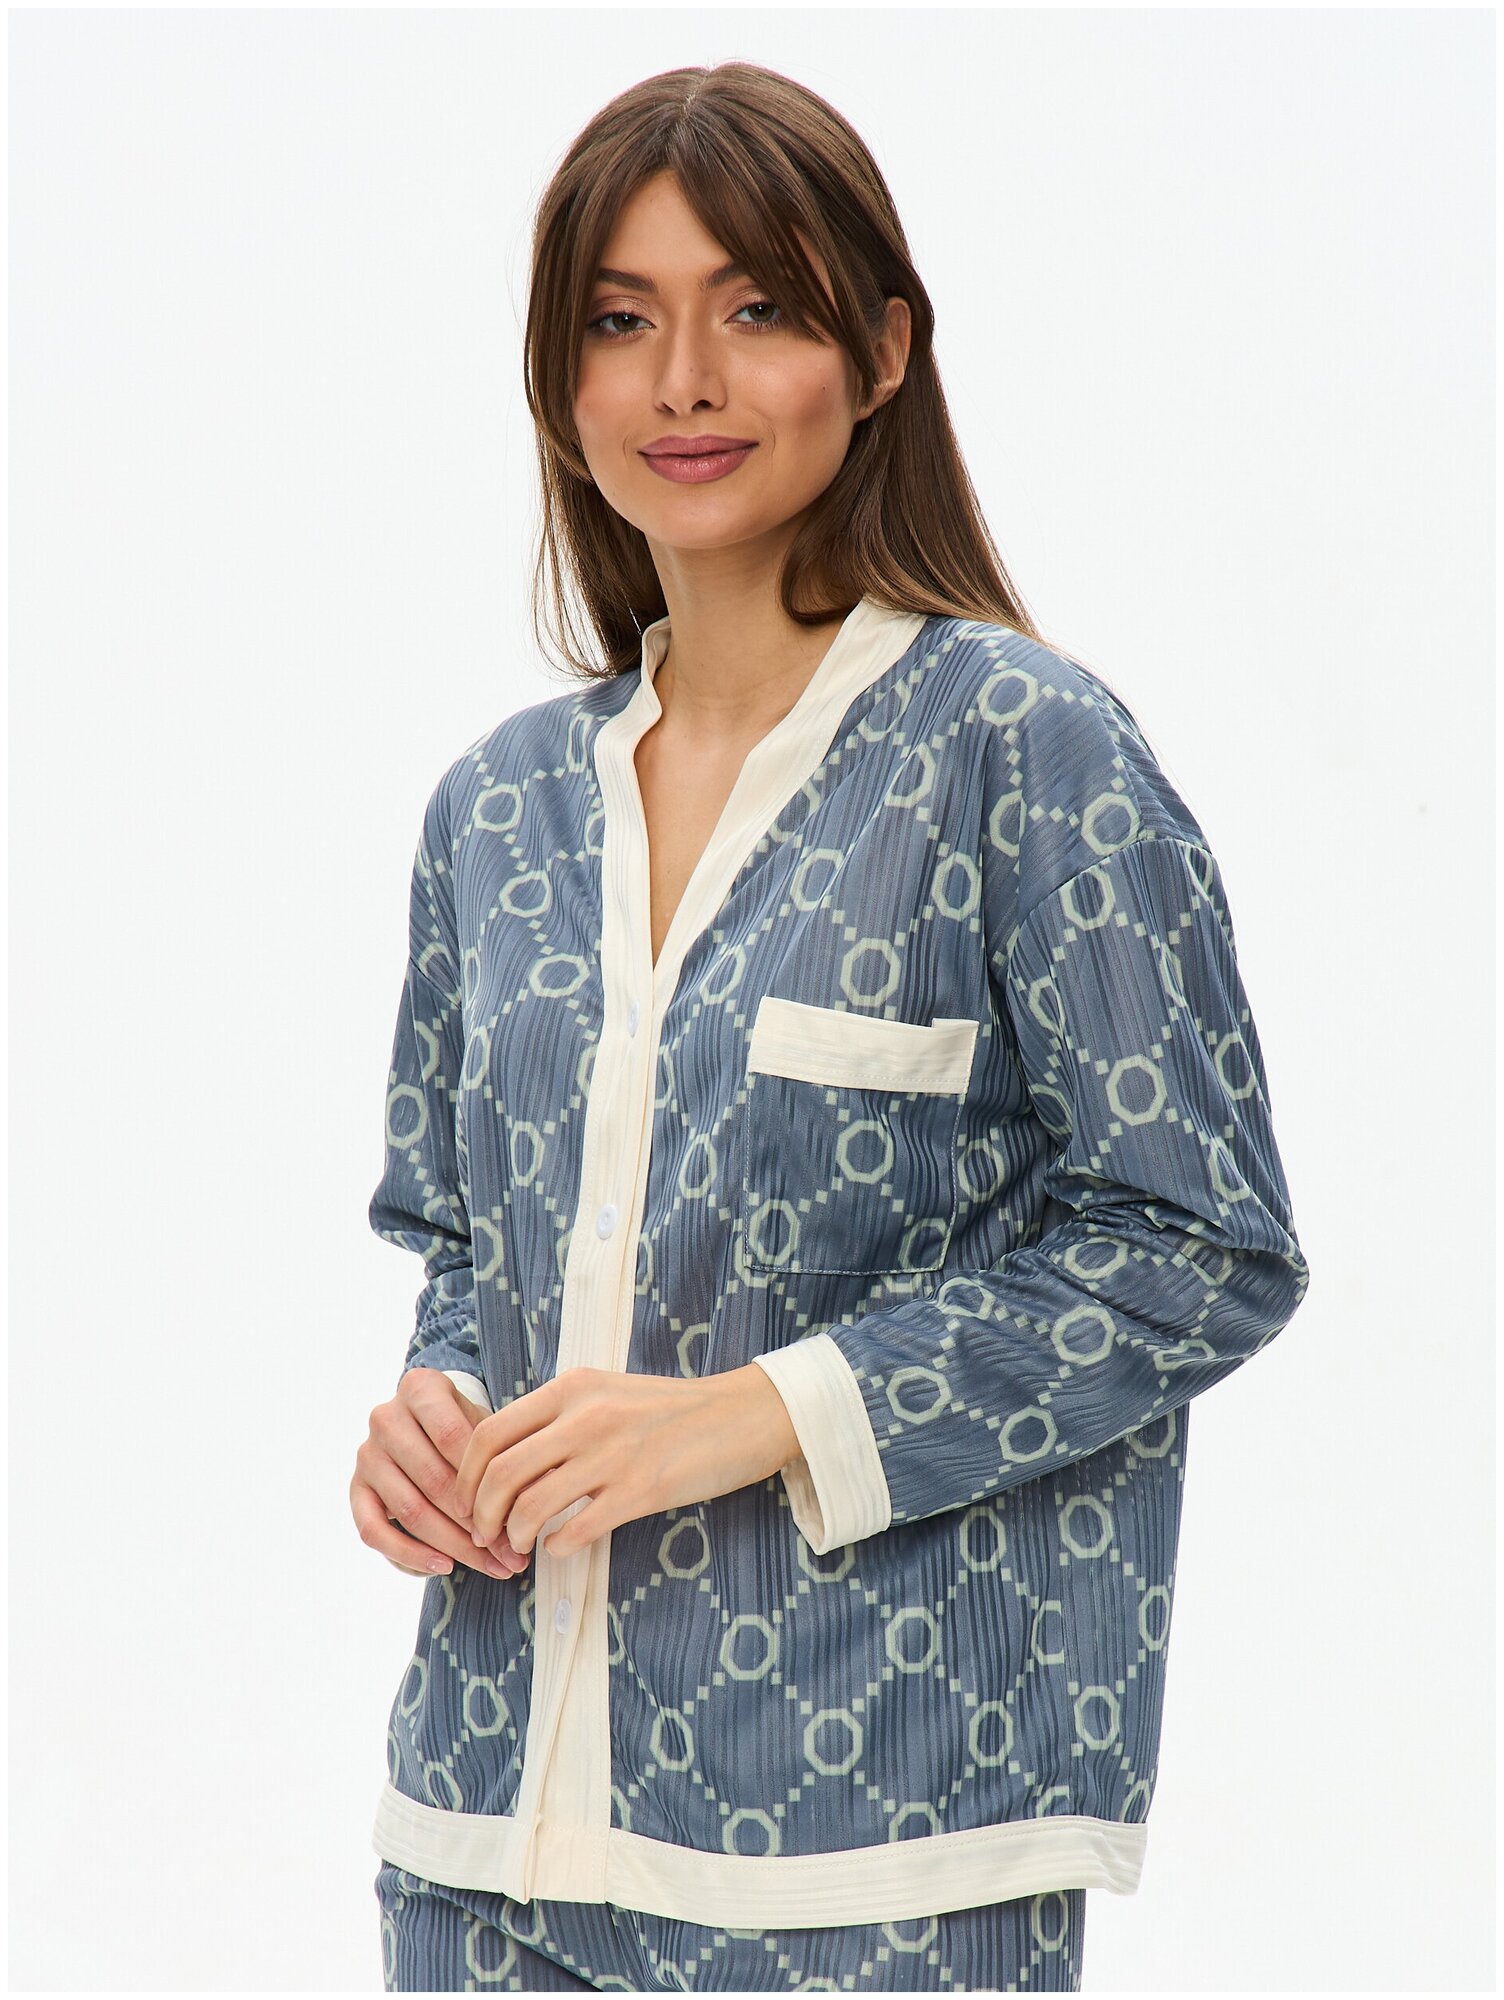 Пижама женская с брюками и рубашкой для сна, домашняя одежда 48/XXL размер - фотография № 11